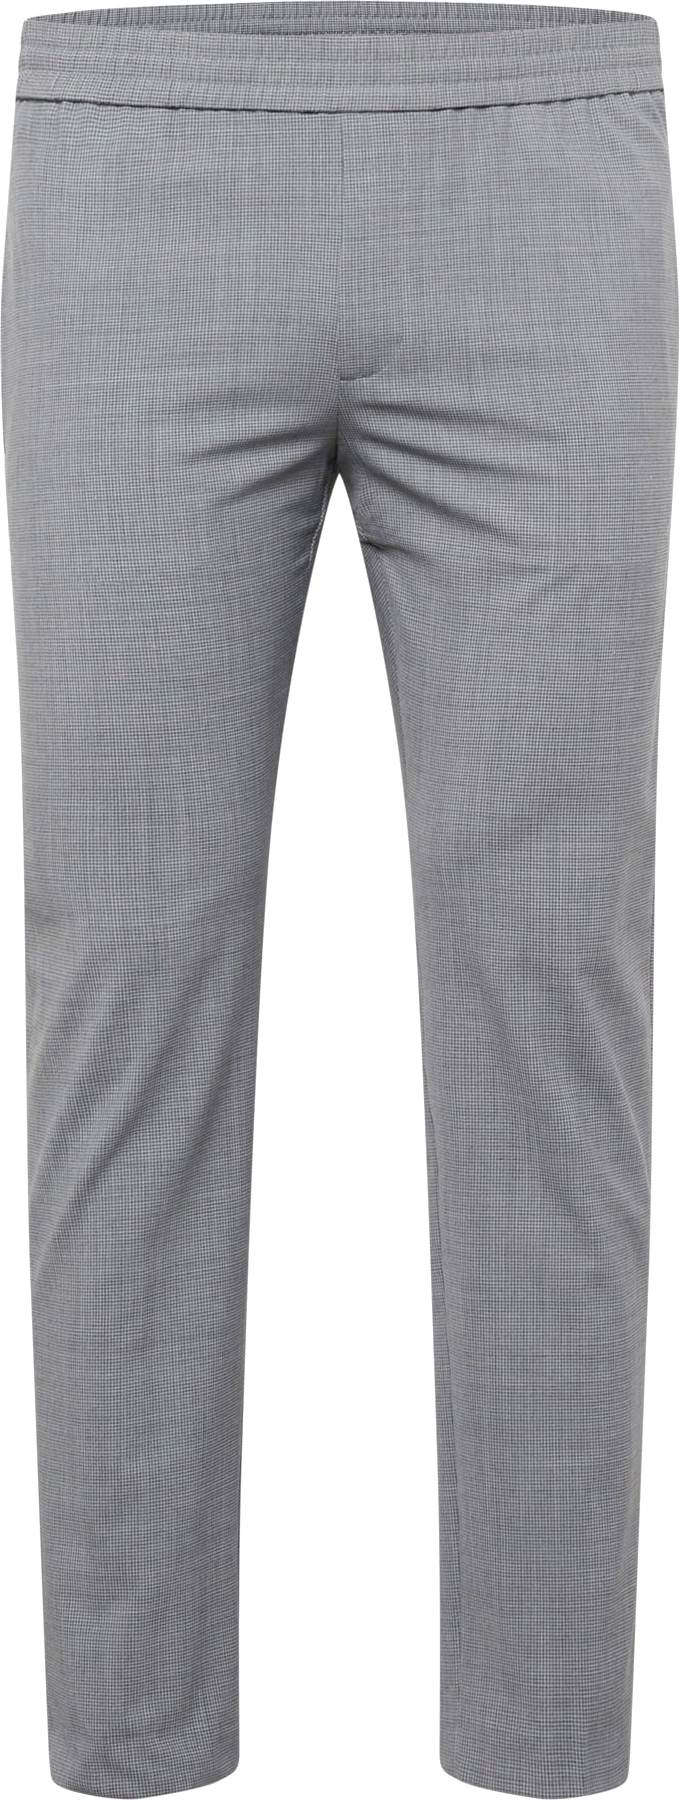 Kalhoty 'HAMPTON' Tommy Hilfiger Tailored šedý melír